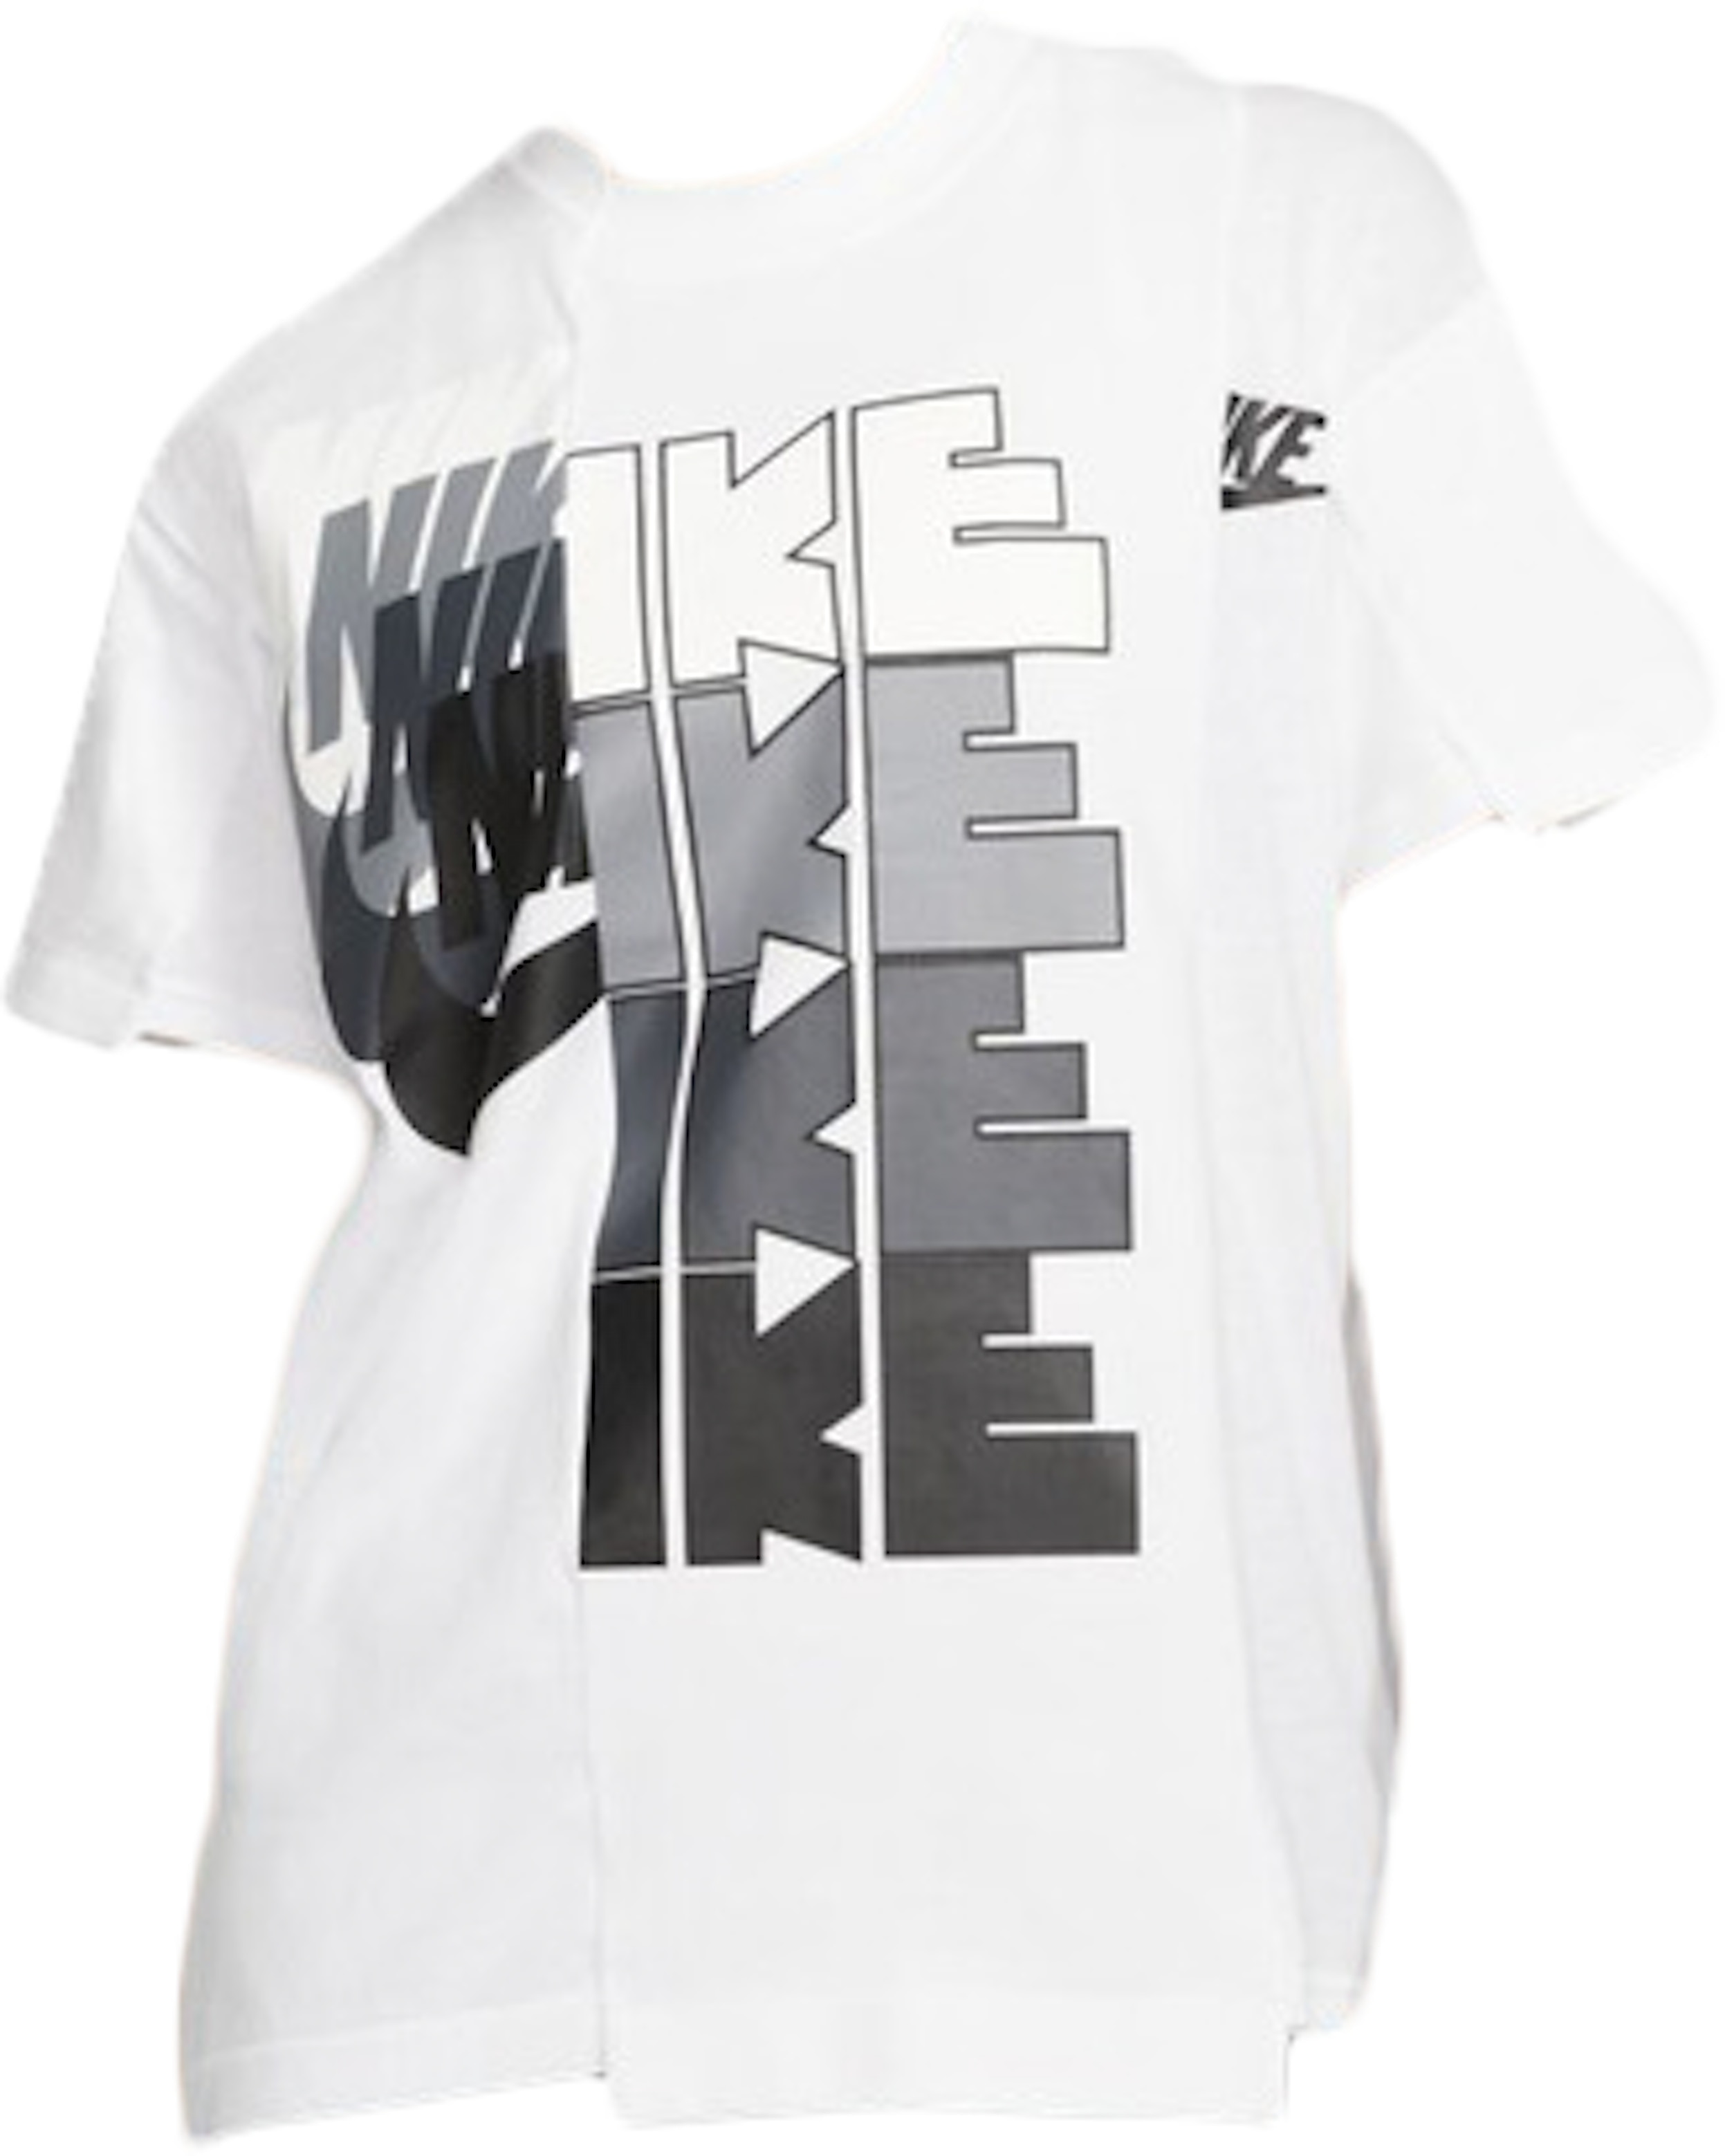 Nike x Sacai Tee White/Grey - FW19